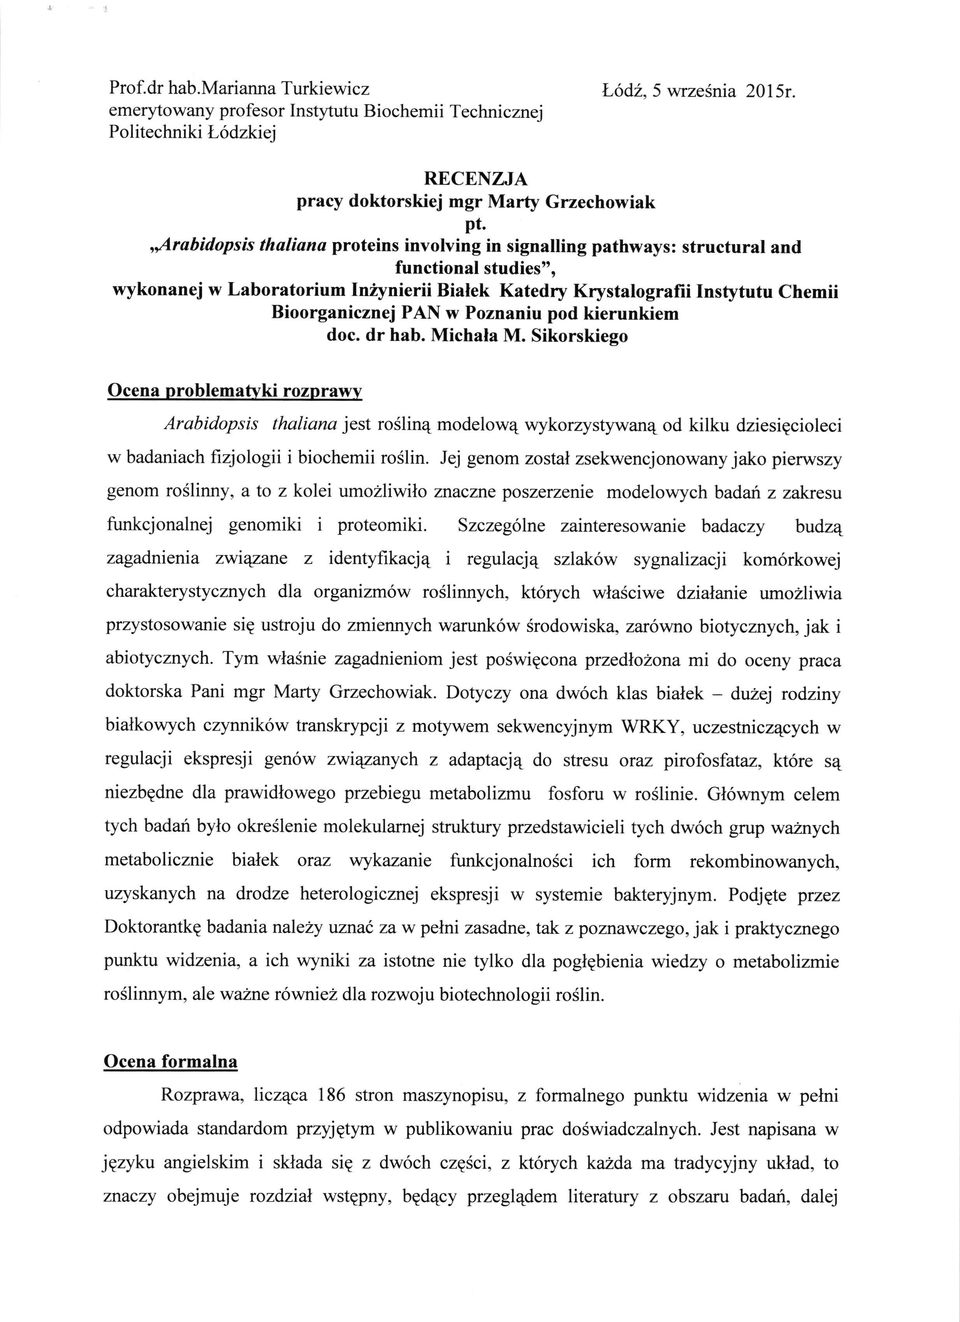 PAN w Poznaniu pod kierunkiem doc. dr hab. Michala M.